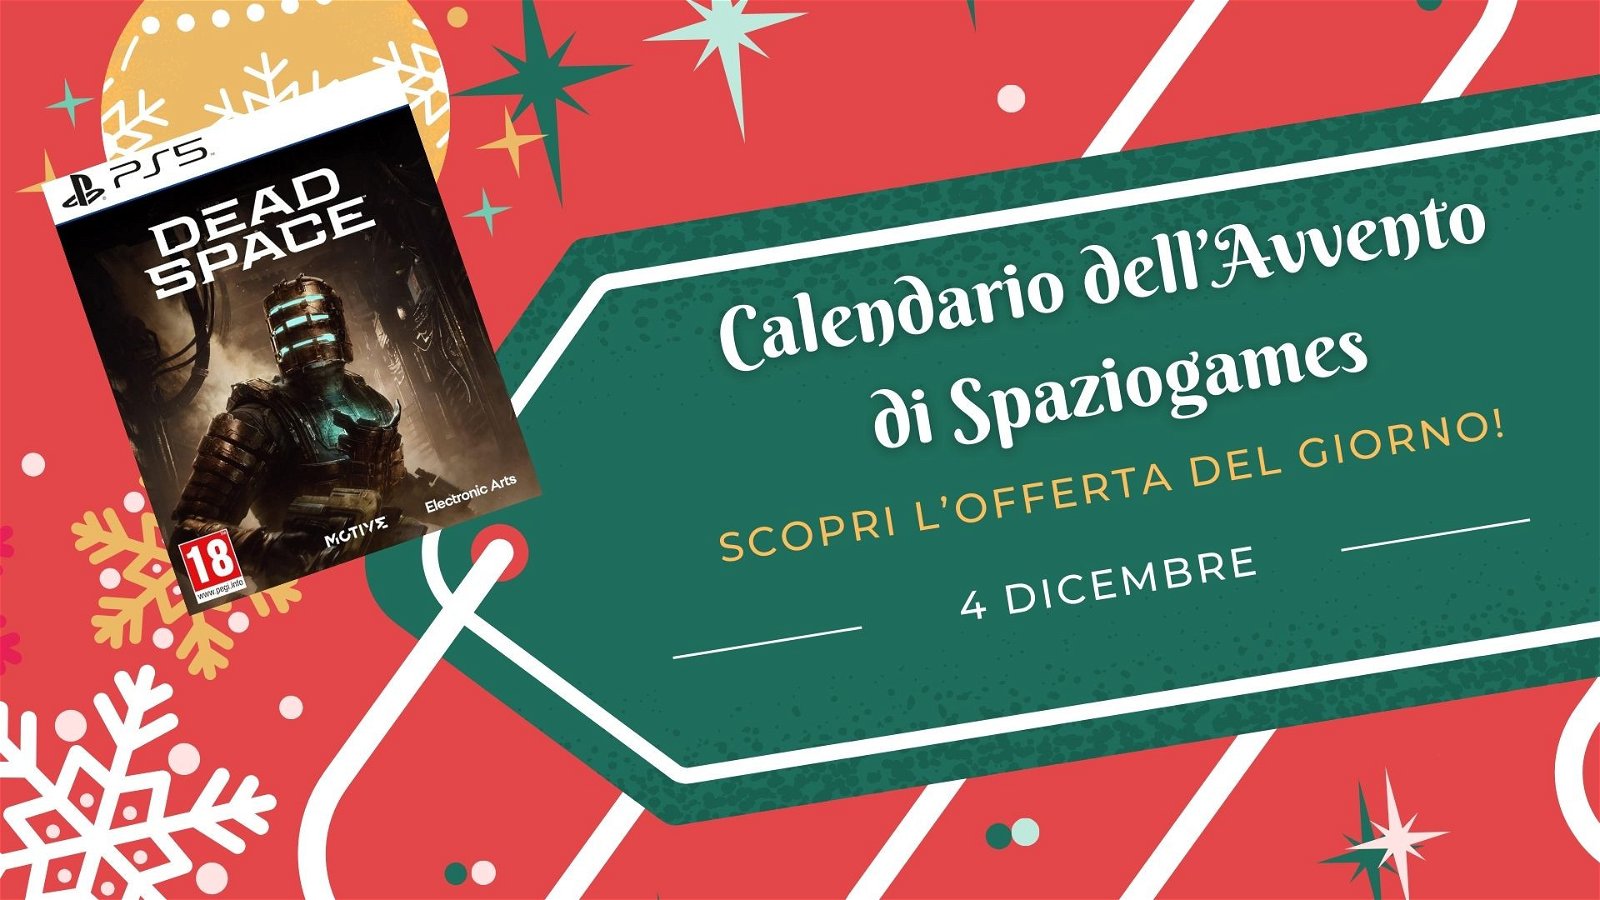 Calendario dell'avvento di Spaziogames: scopri l'offerta del 4 dicembre